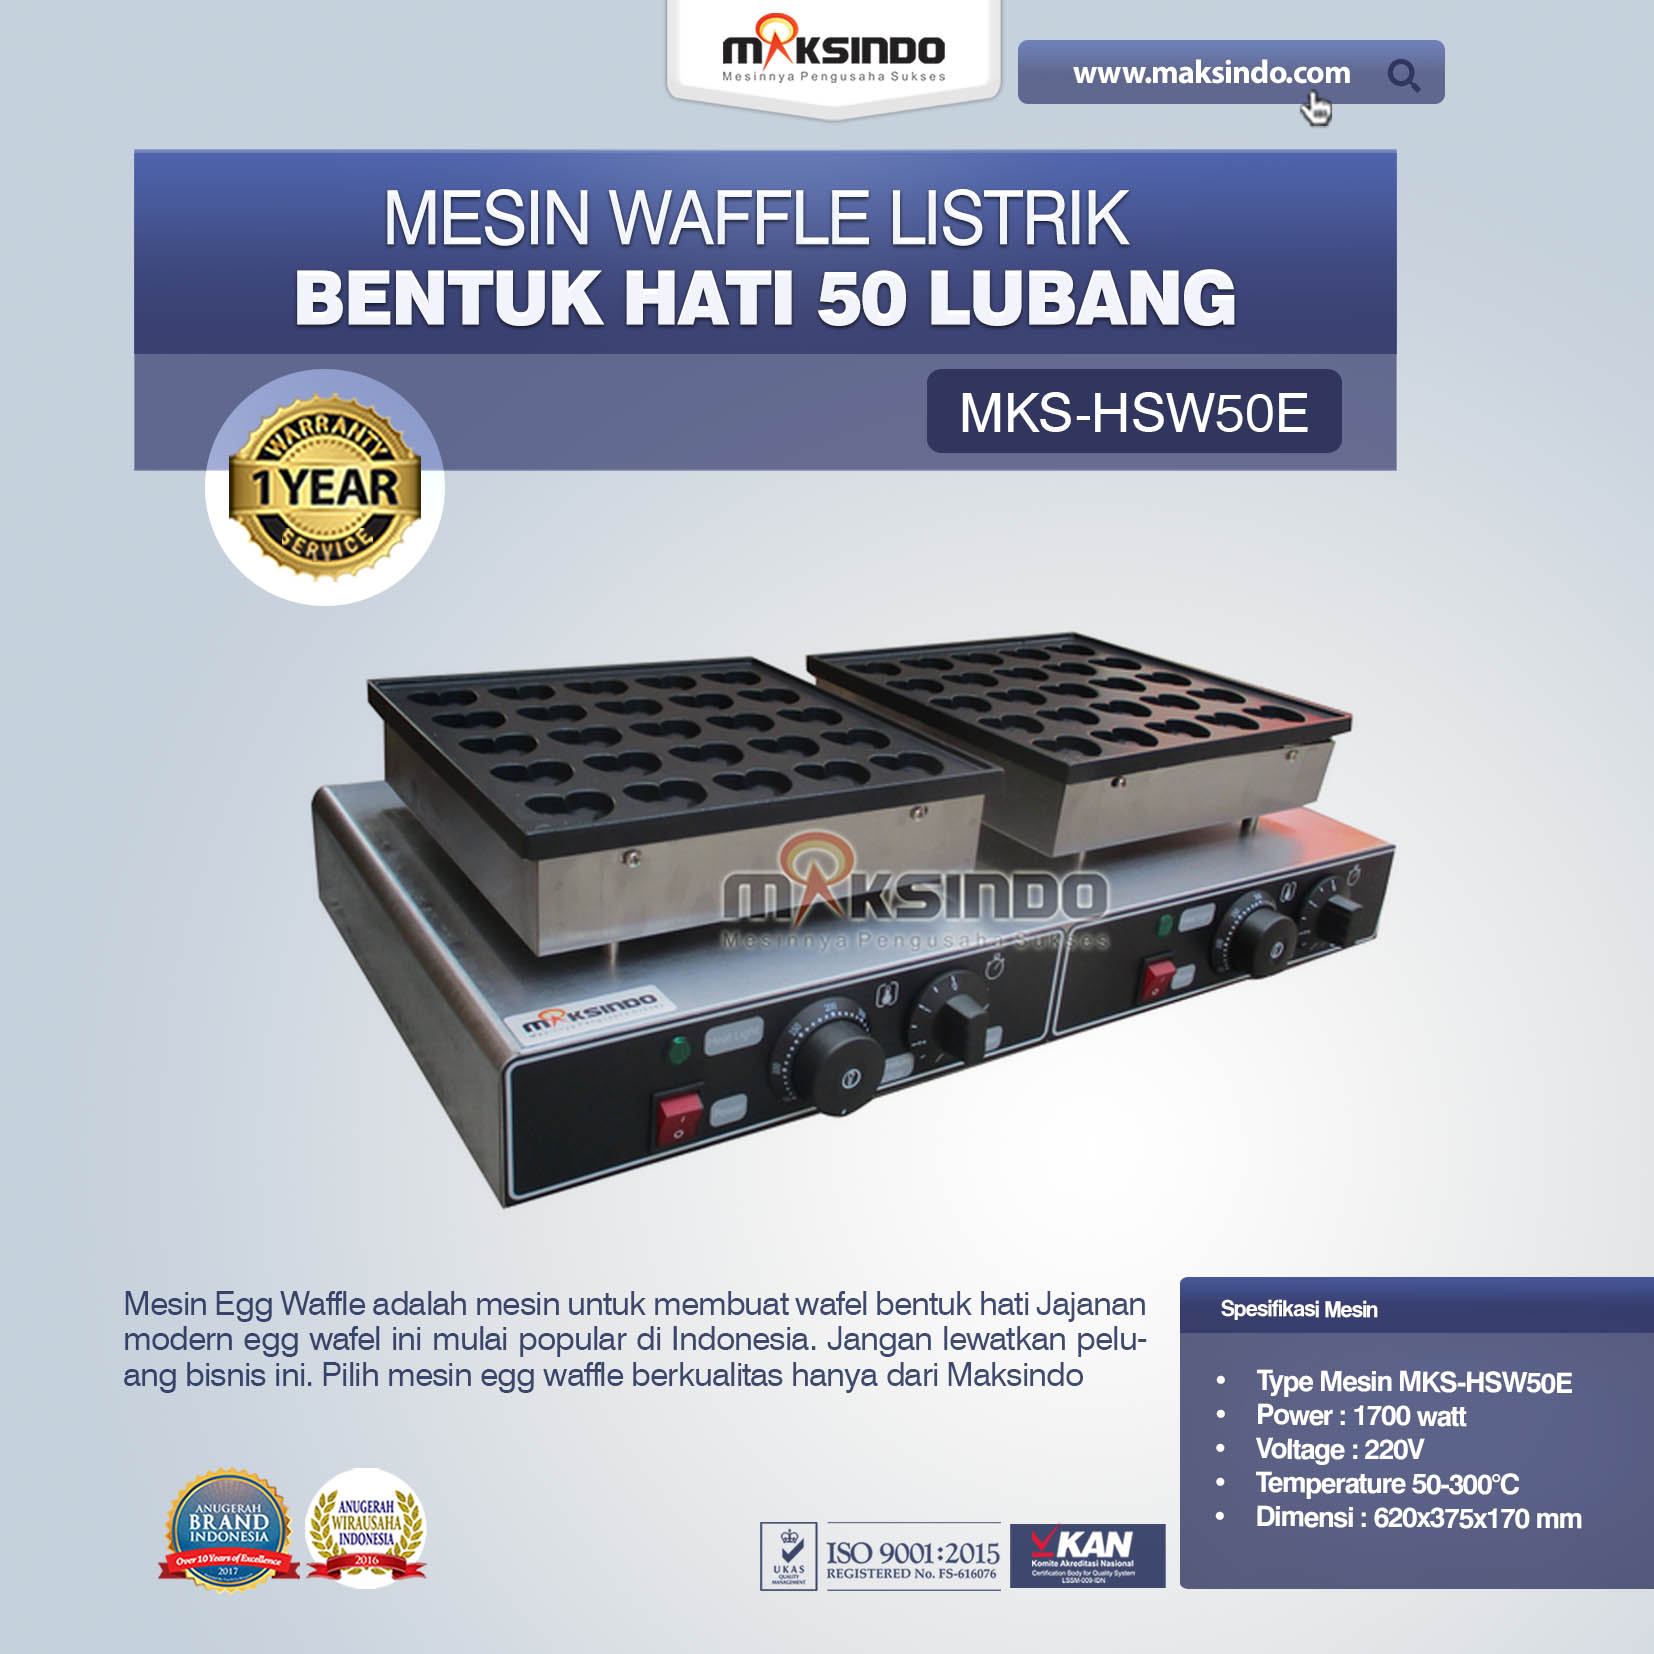 Jual Listrik Waffle Bentuk Hati 50 Lubang MKS-HSW50E di Jakarta